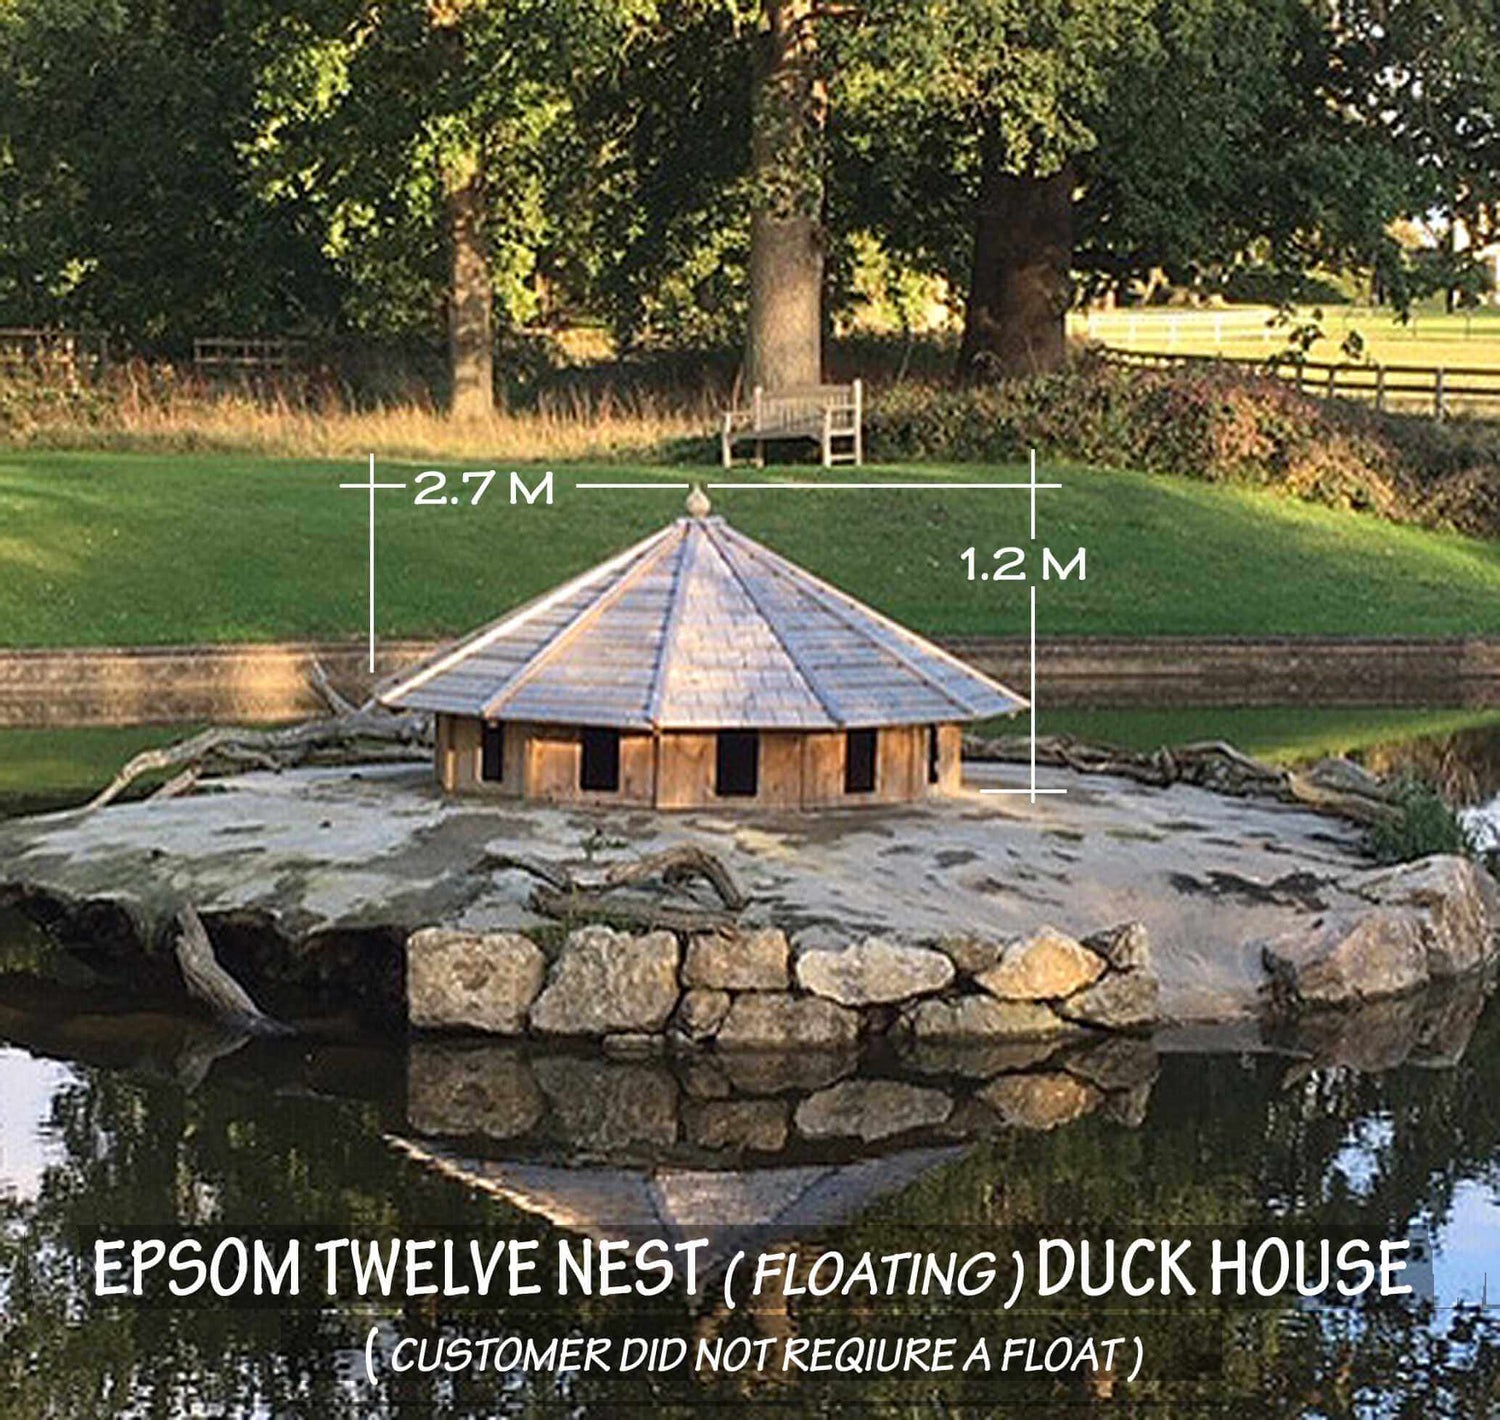 Epsom 12 Nest - Floating Duck Nest